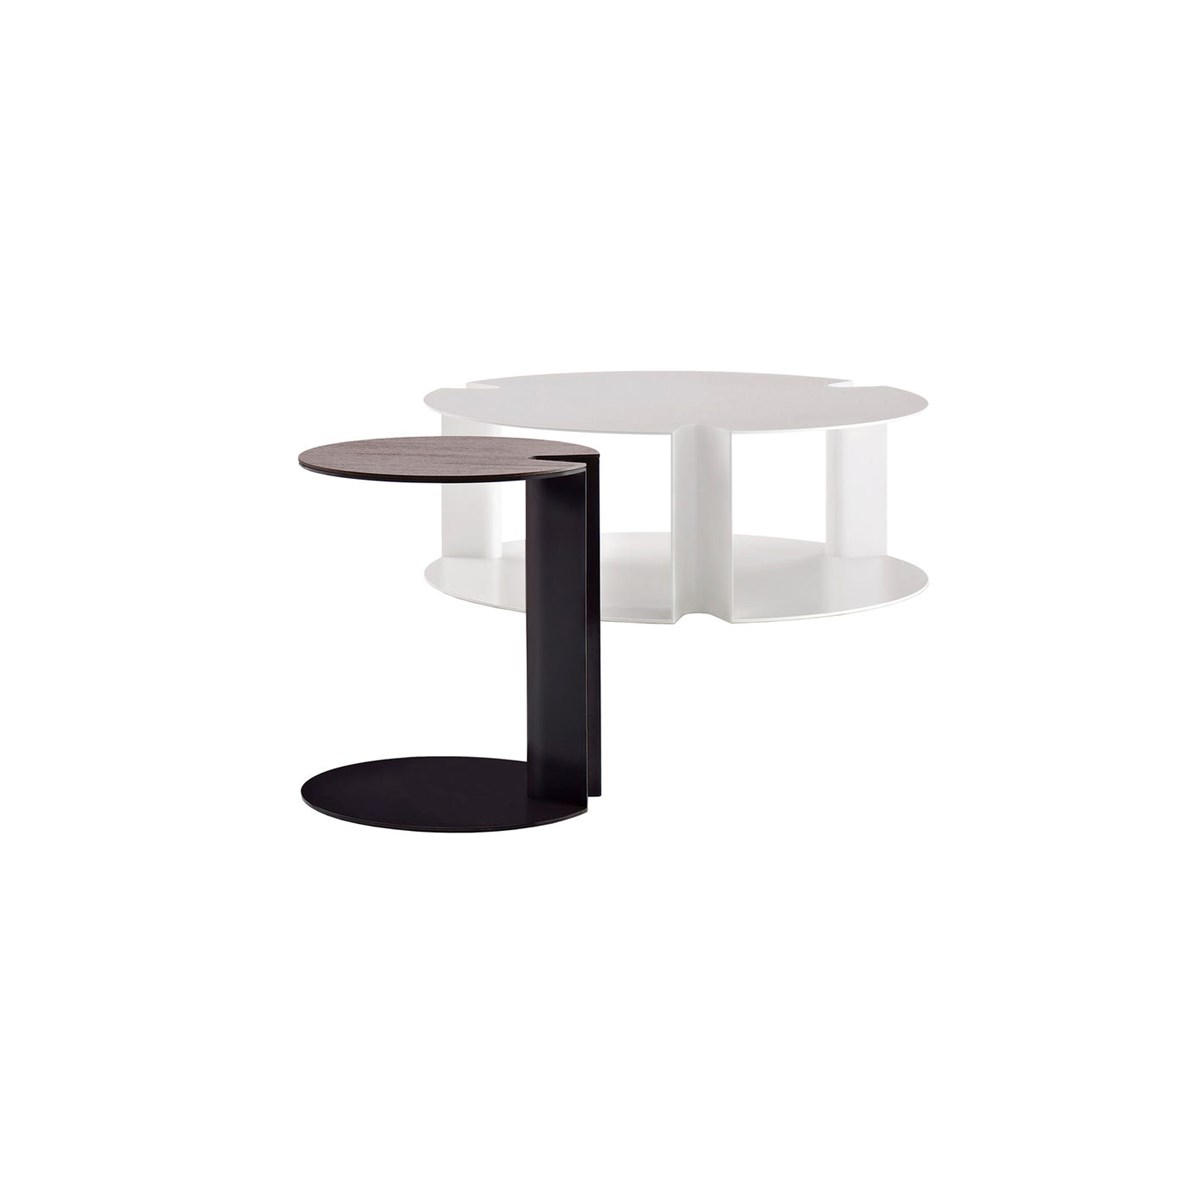 Thissslider 0 379 Bebitalia Small Table Nix 01 Miniatura 1 1